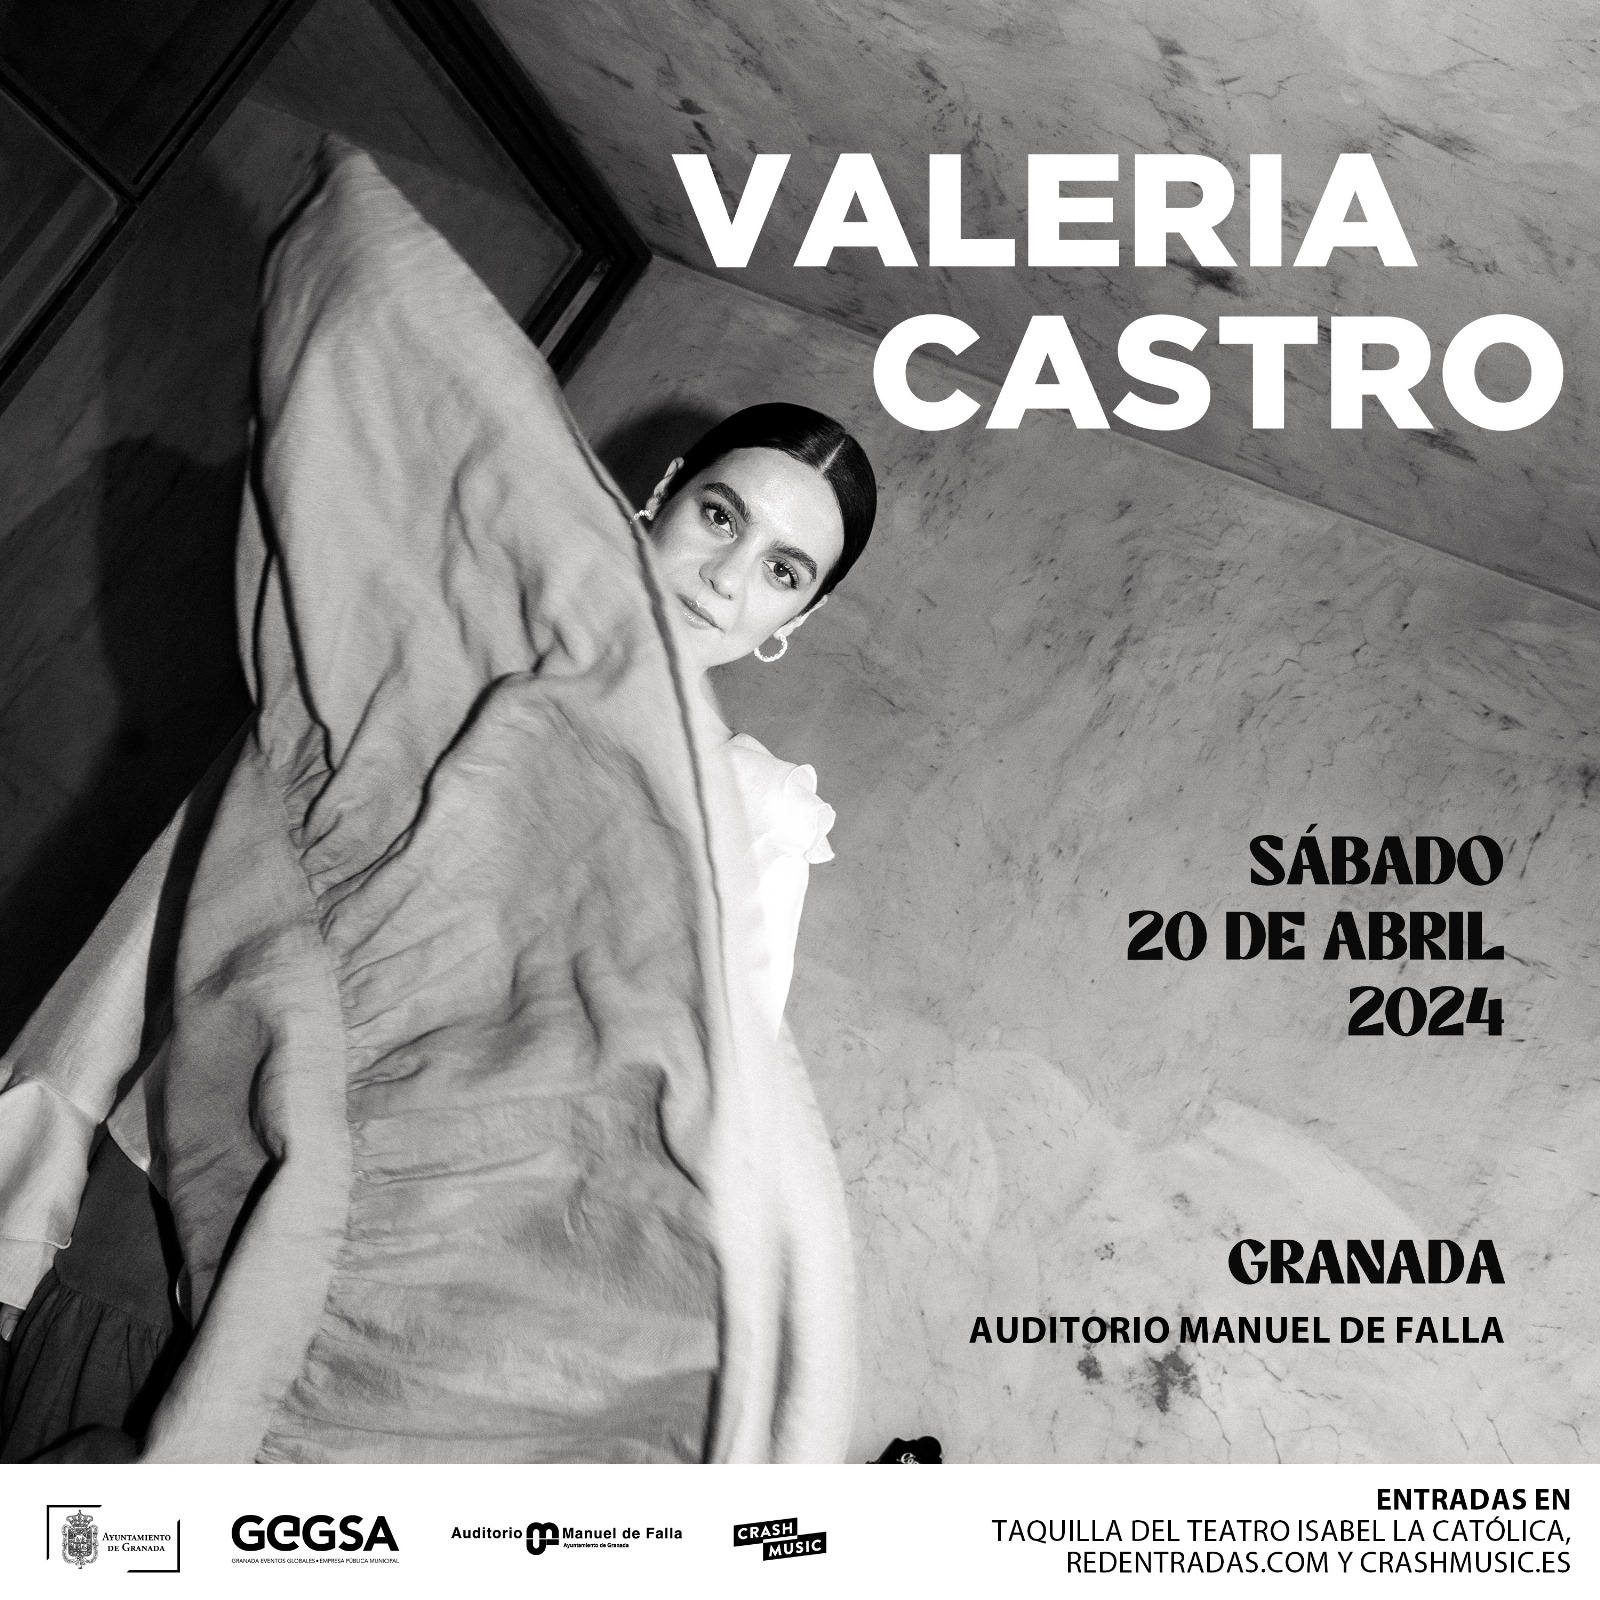 CONCIERTO DE VALERIA CASTRO - GRANADA - AUDITORIO MANUEL DE FALLA - SÁBADO, 20 DE ABRIL 2024